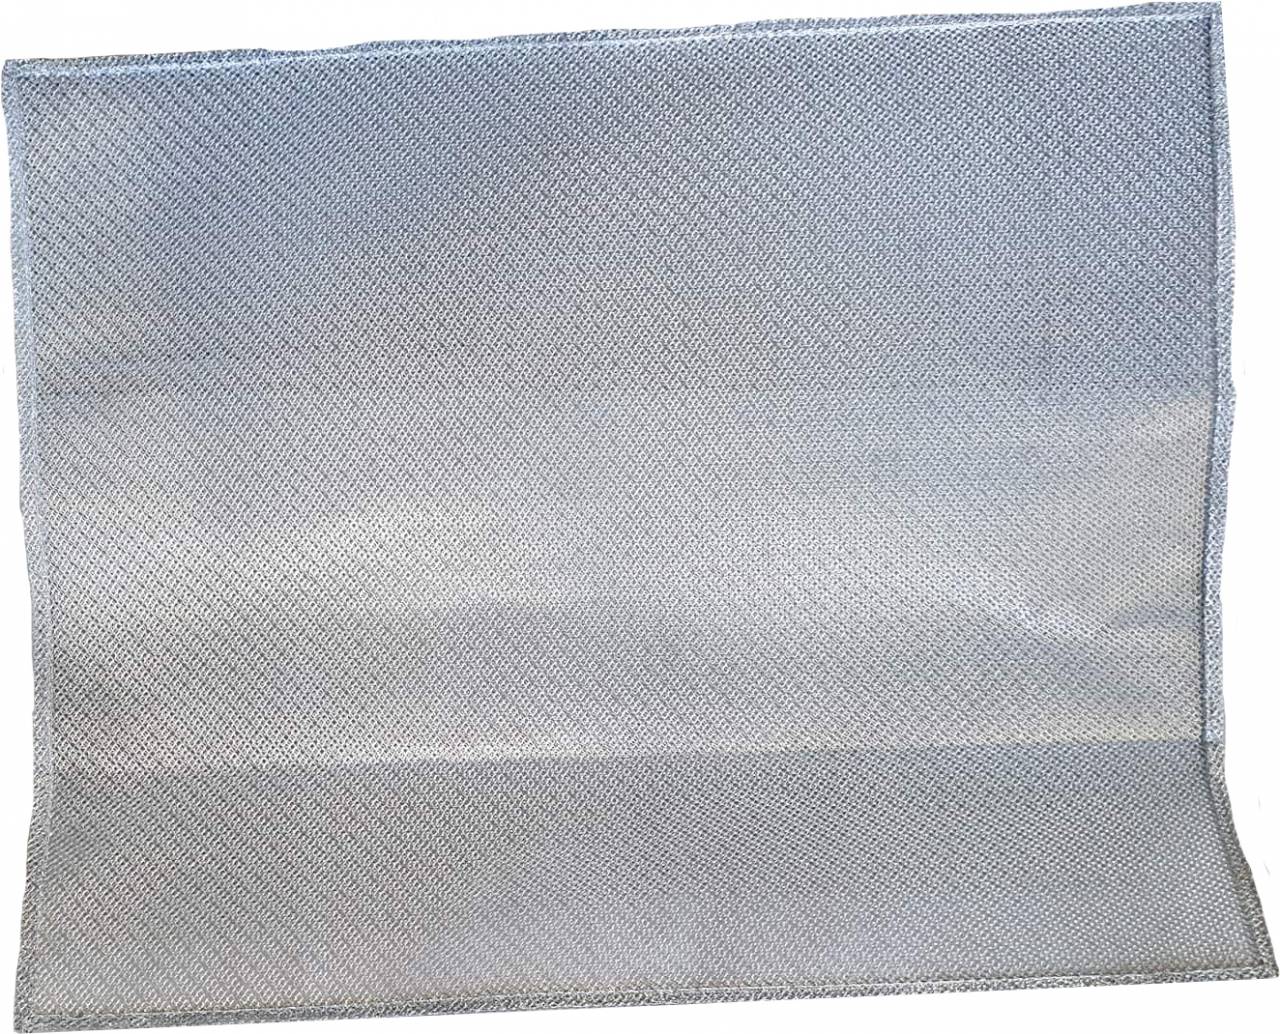 Cata - Páraelszívó fém zsírfilter F-2050 slim széria (MK)